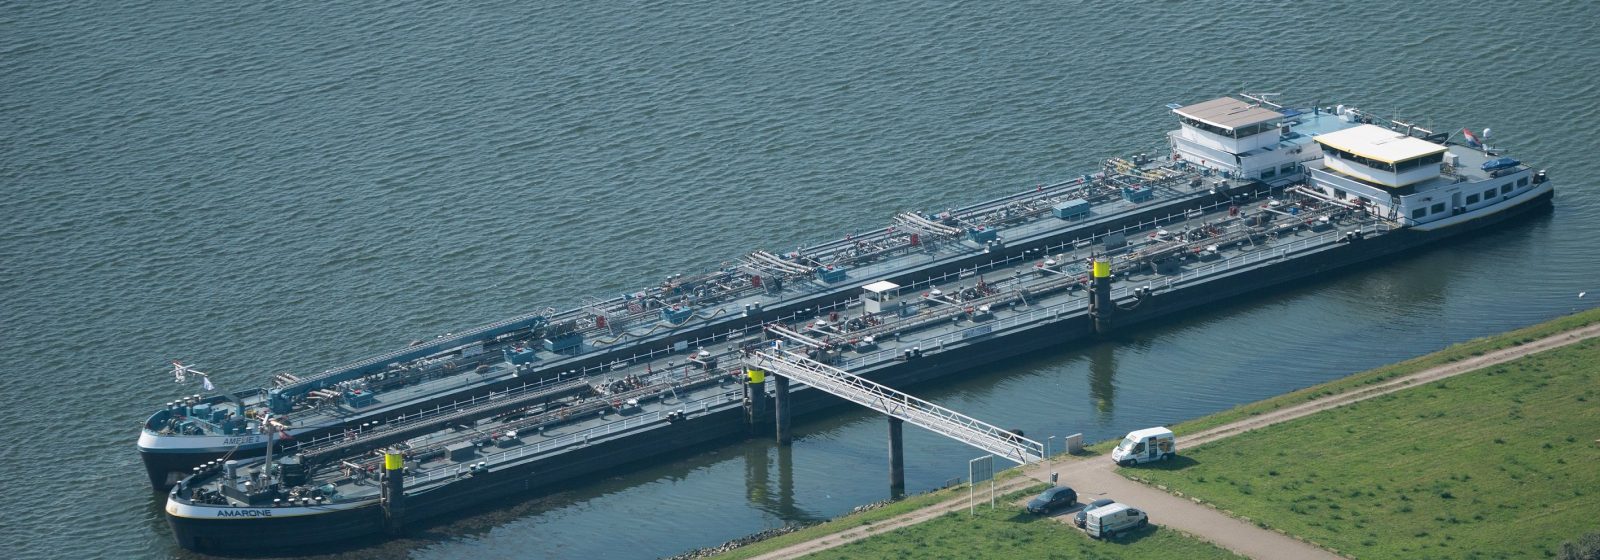 Ligplaatsen voor schepen met gevaarlijke producten aan het Calandkanaal in de haven van Rotterdam